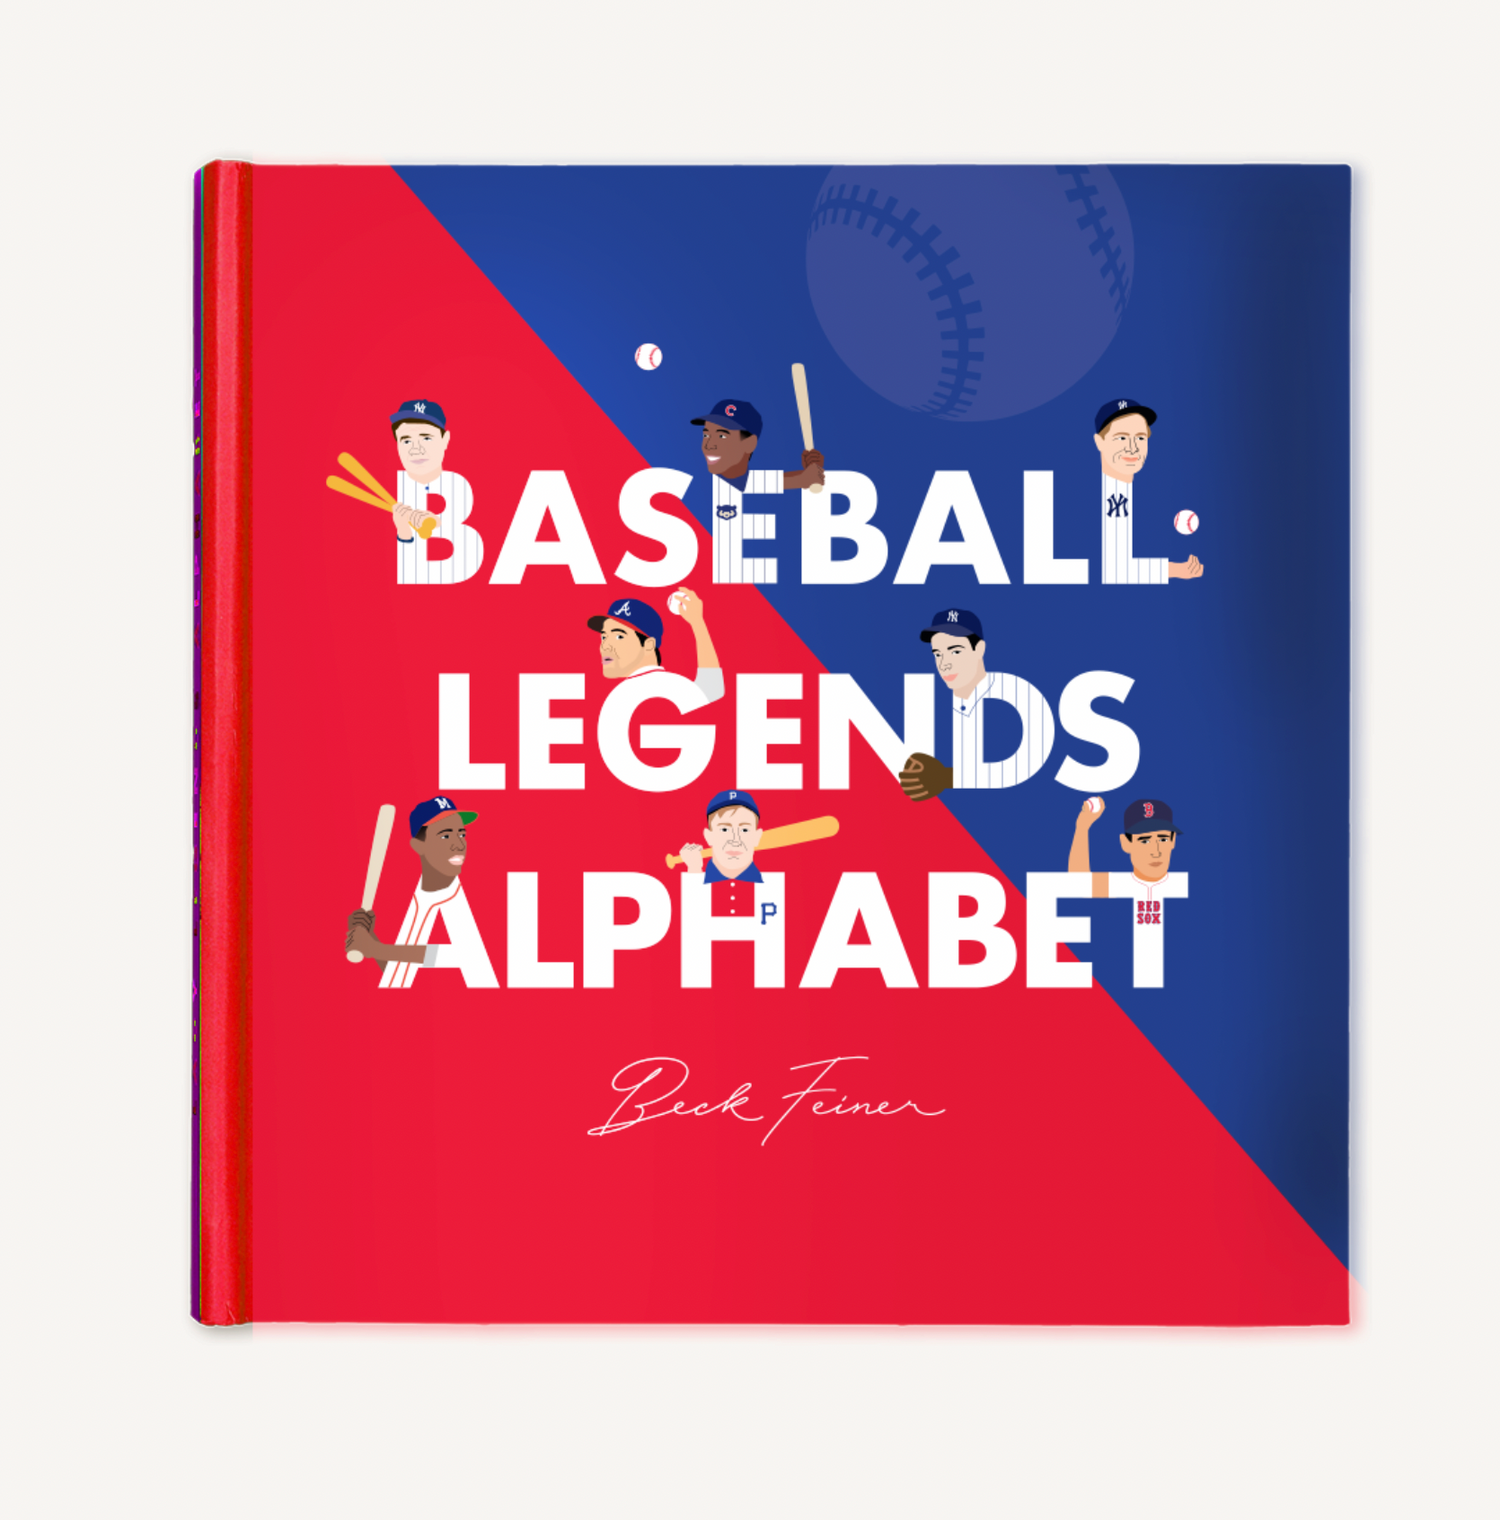 Baseball Alphabet Legends Book